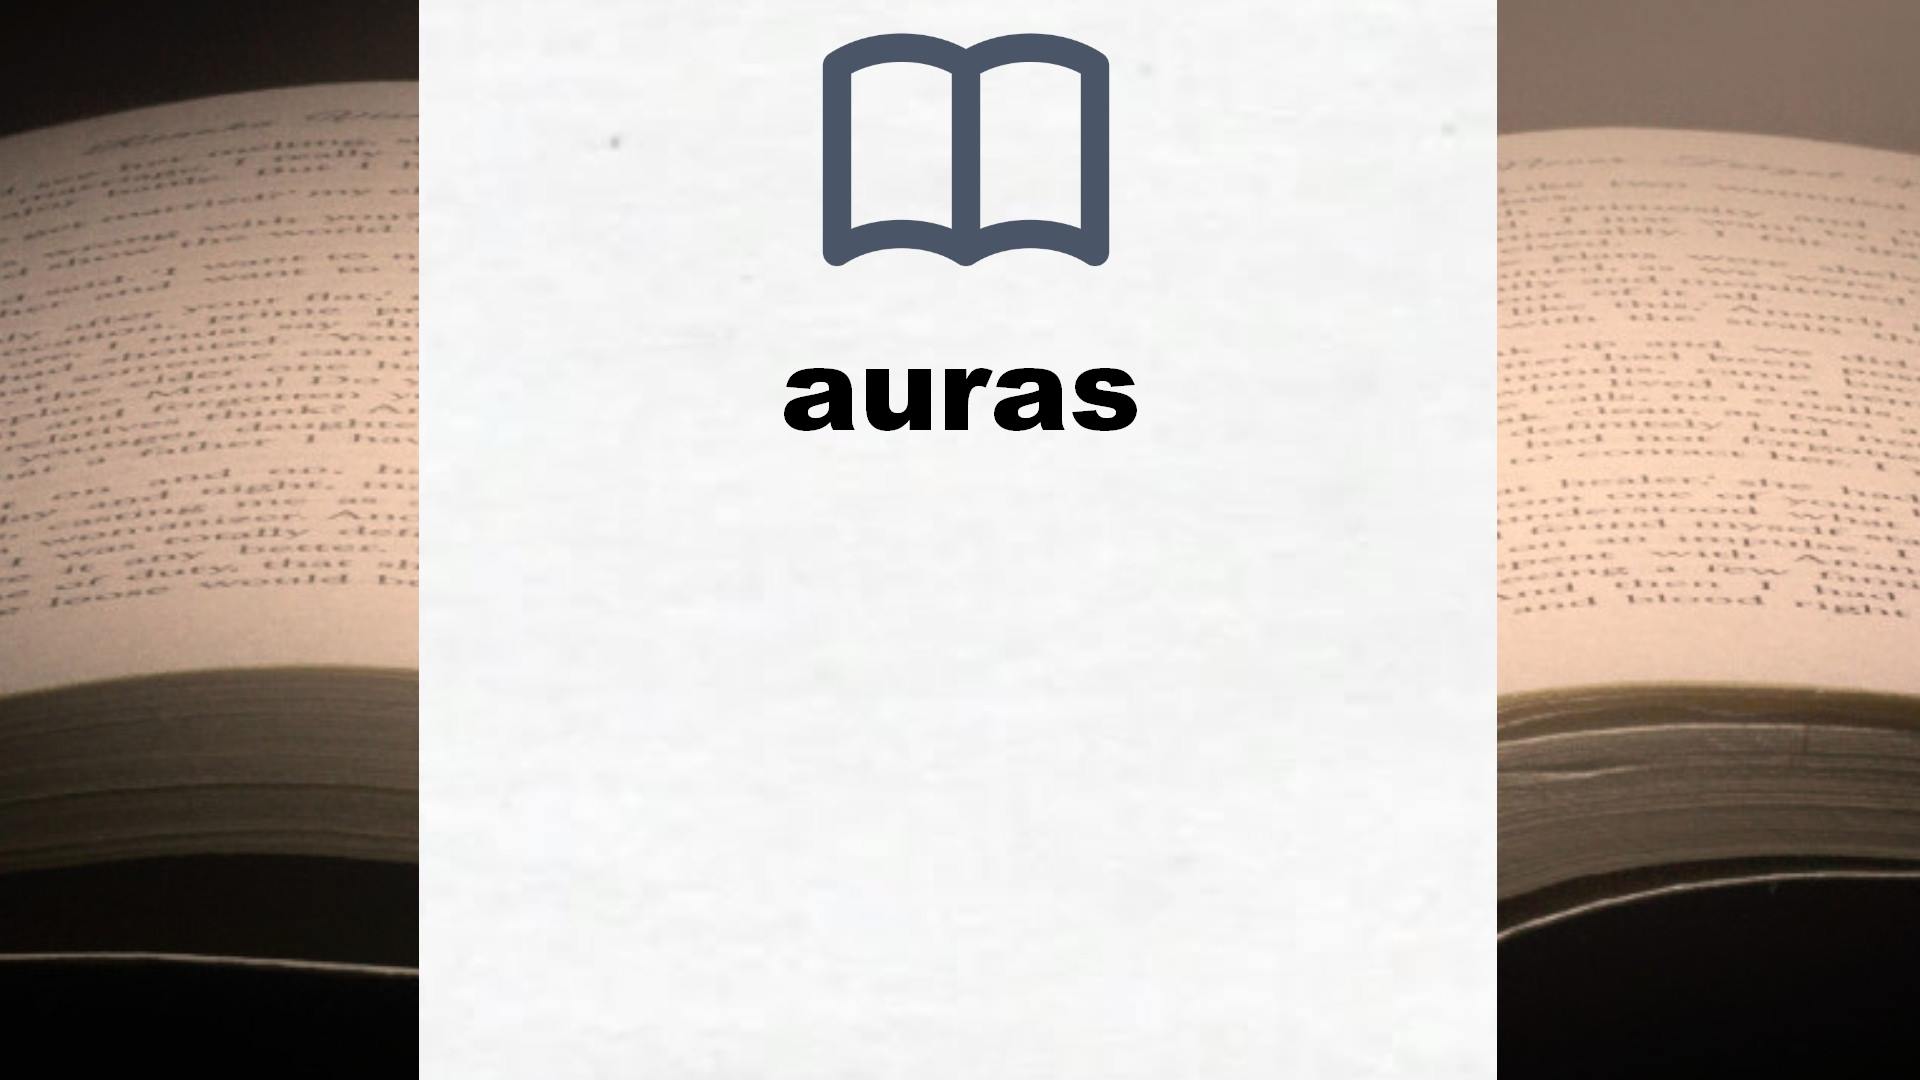 Libros sobre auras